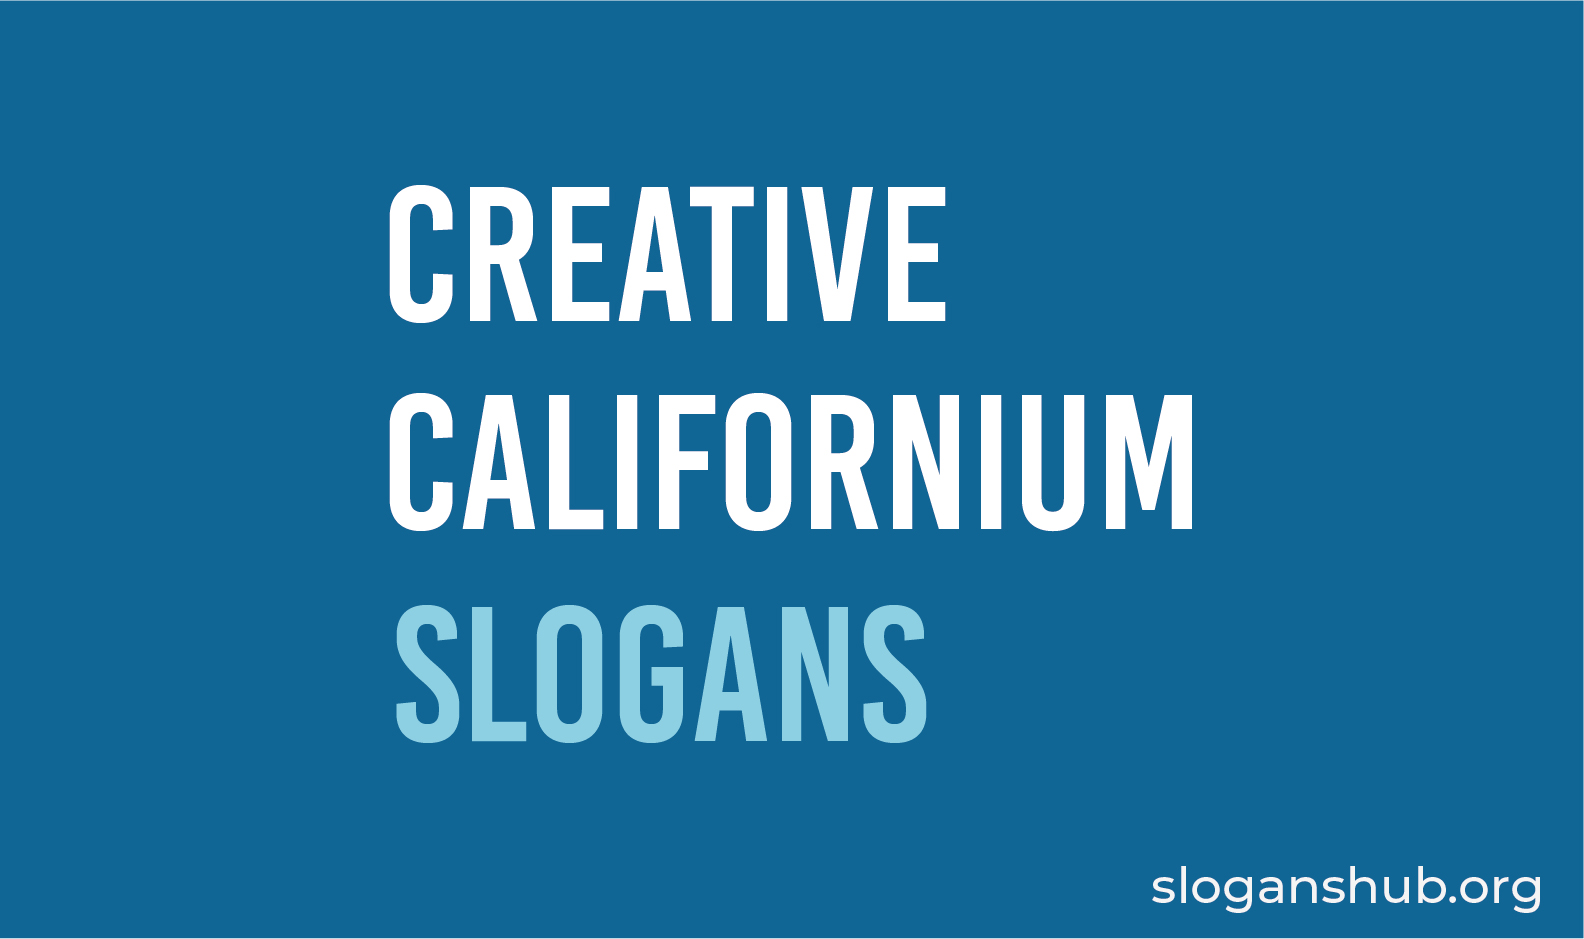 List of Creative Californium Slogans